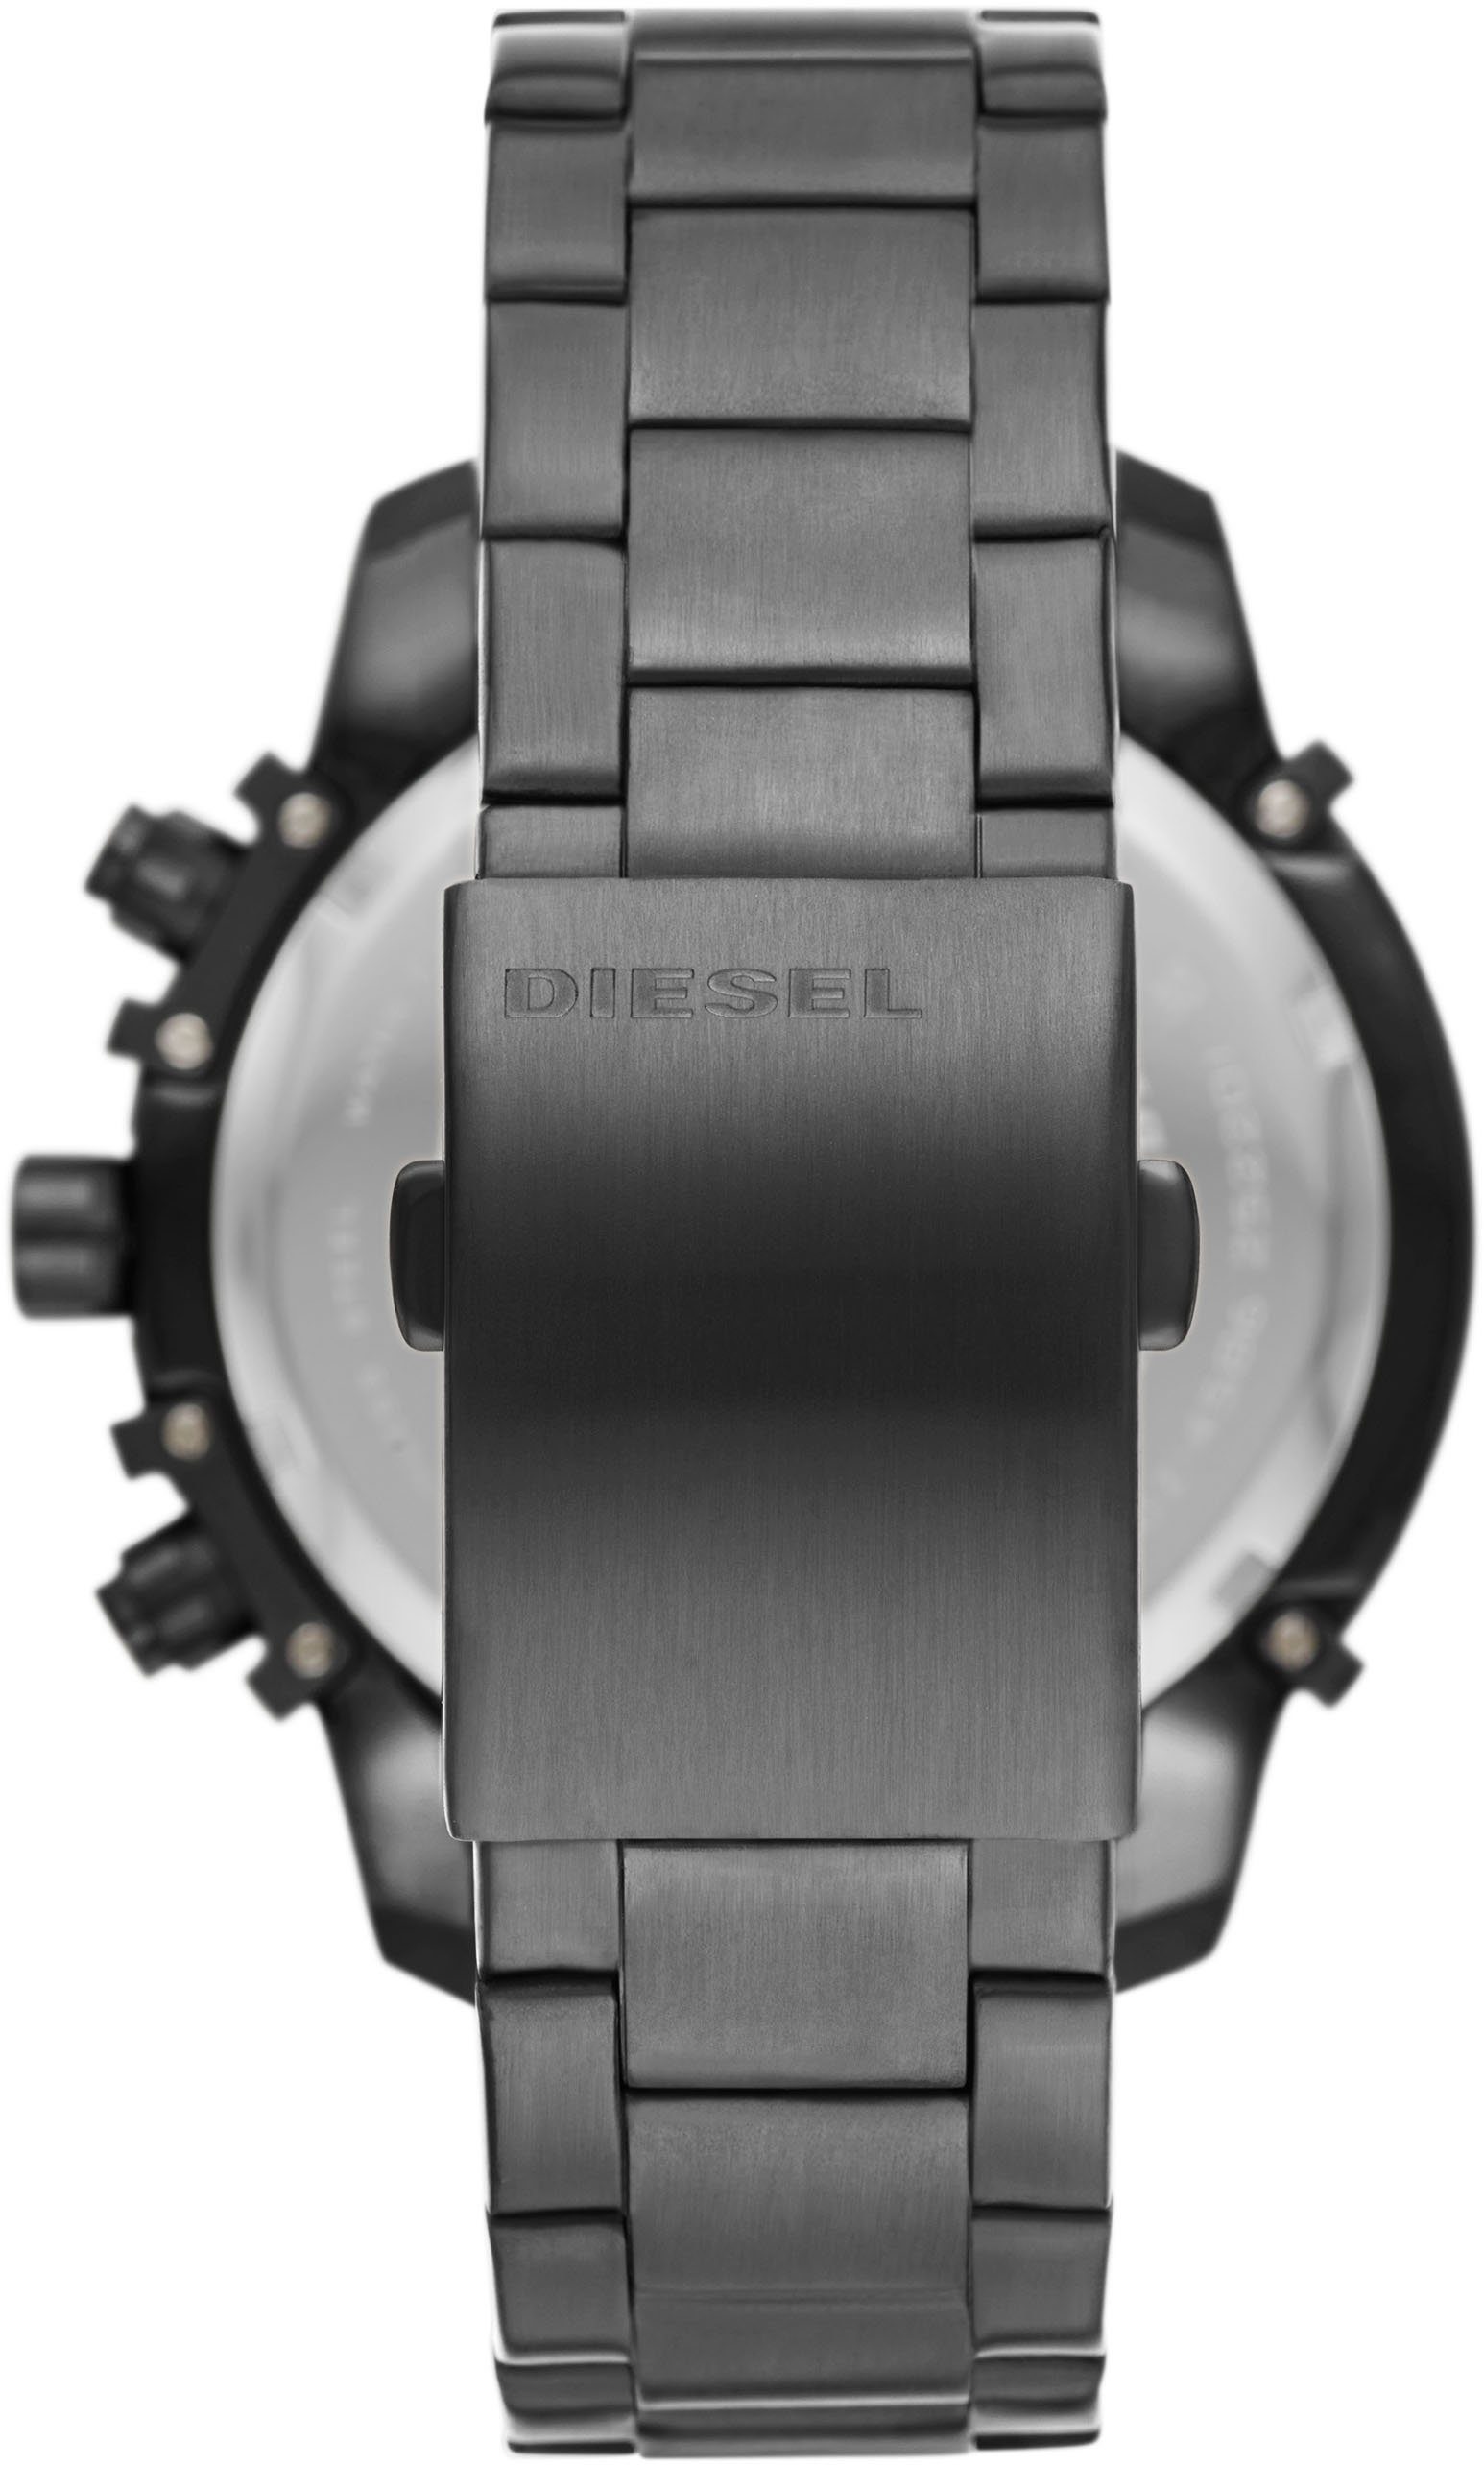 Diesel Chronograph GRIFFED, DZ4586